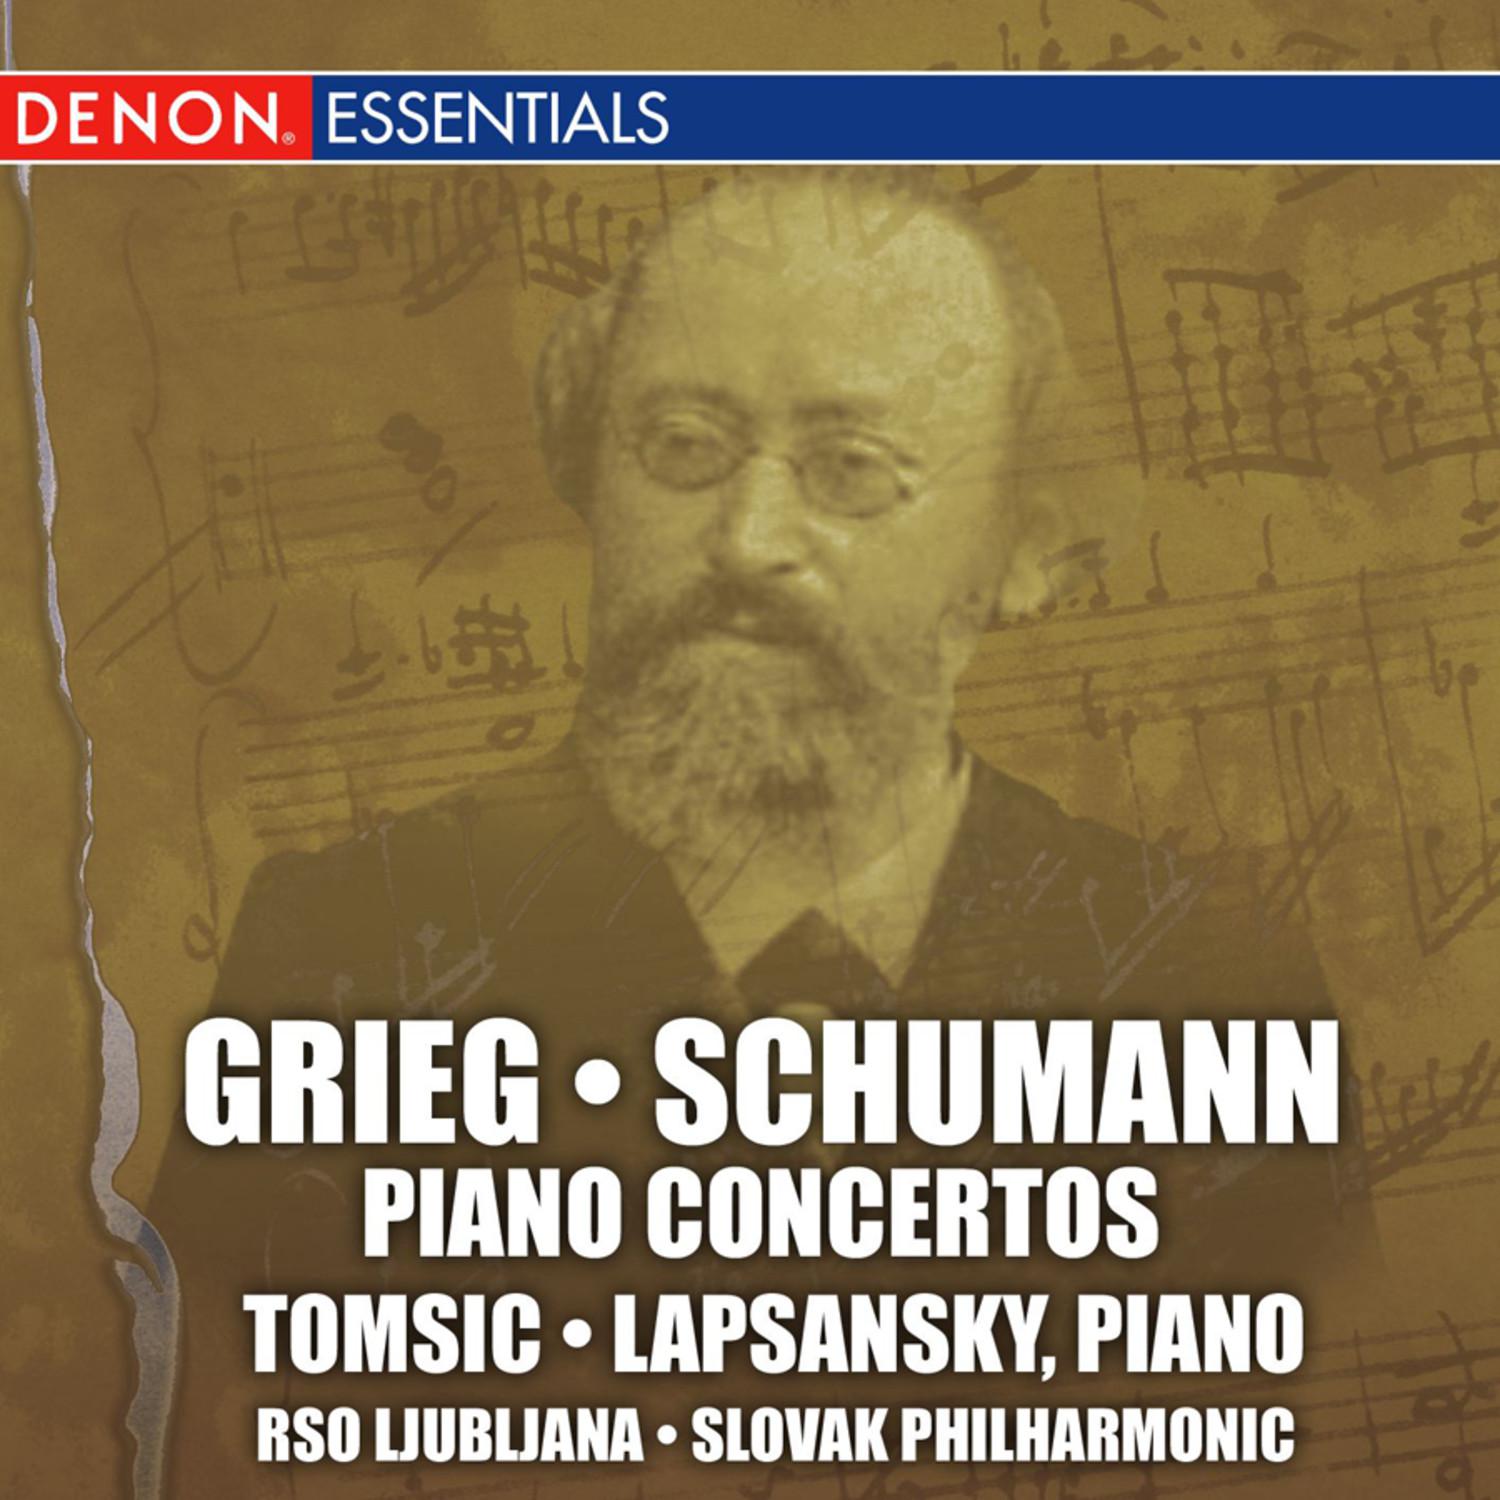 Grieg and Schumann: Piano Concertos